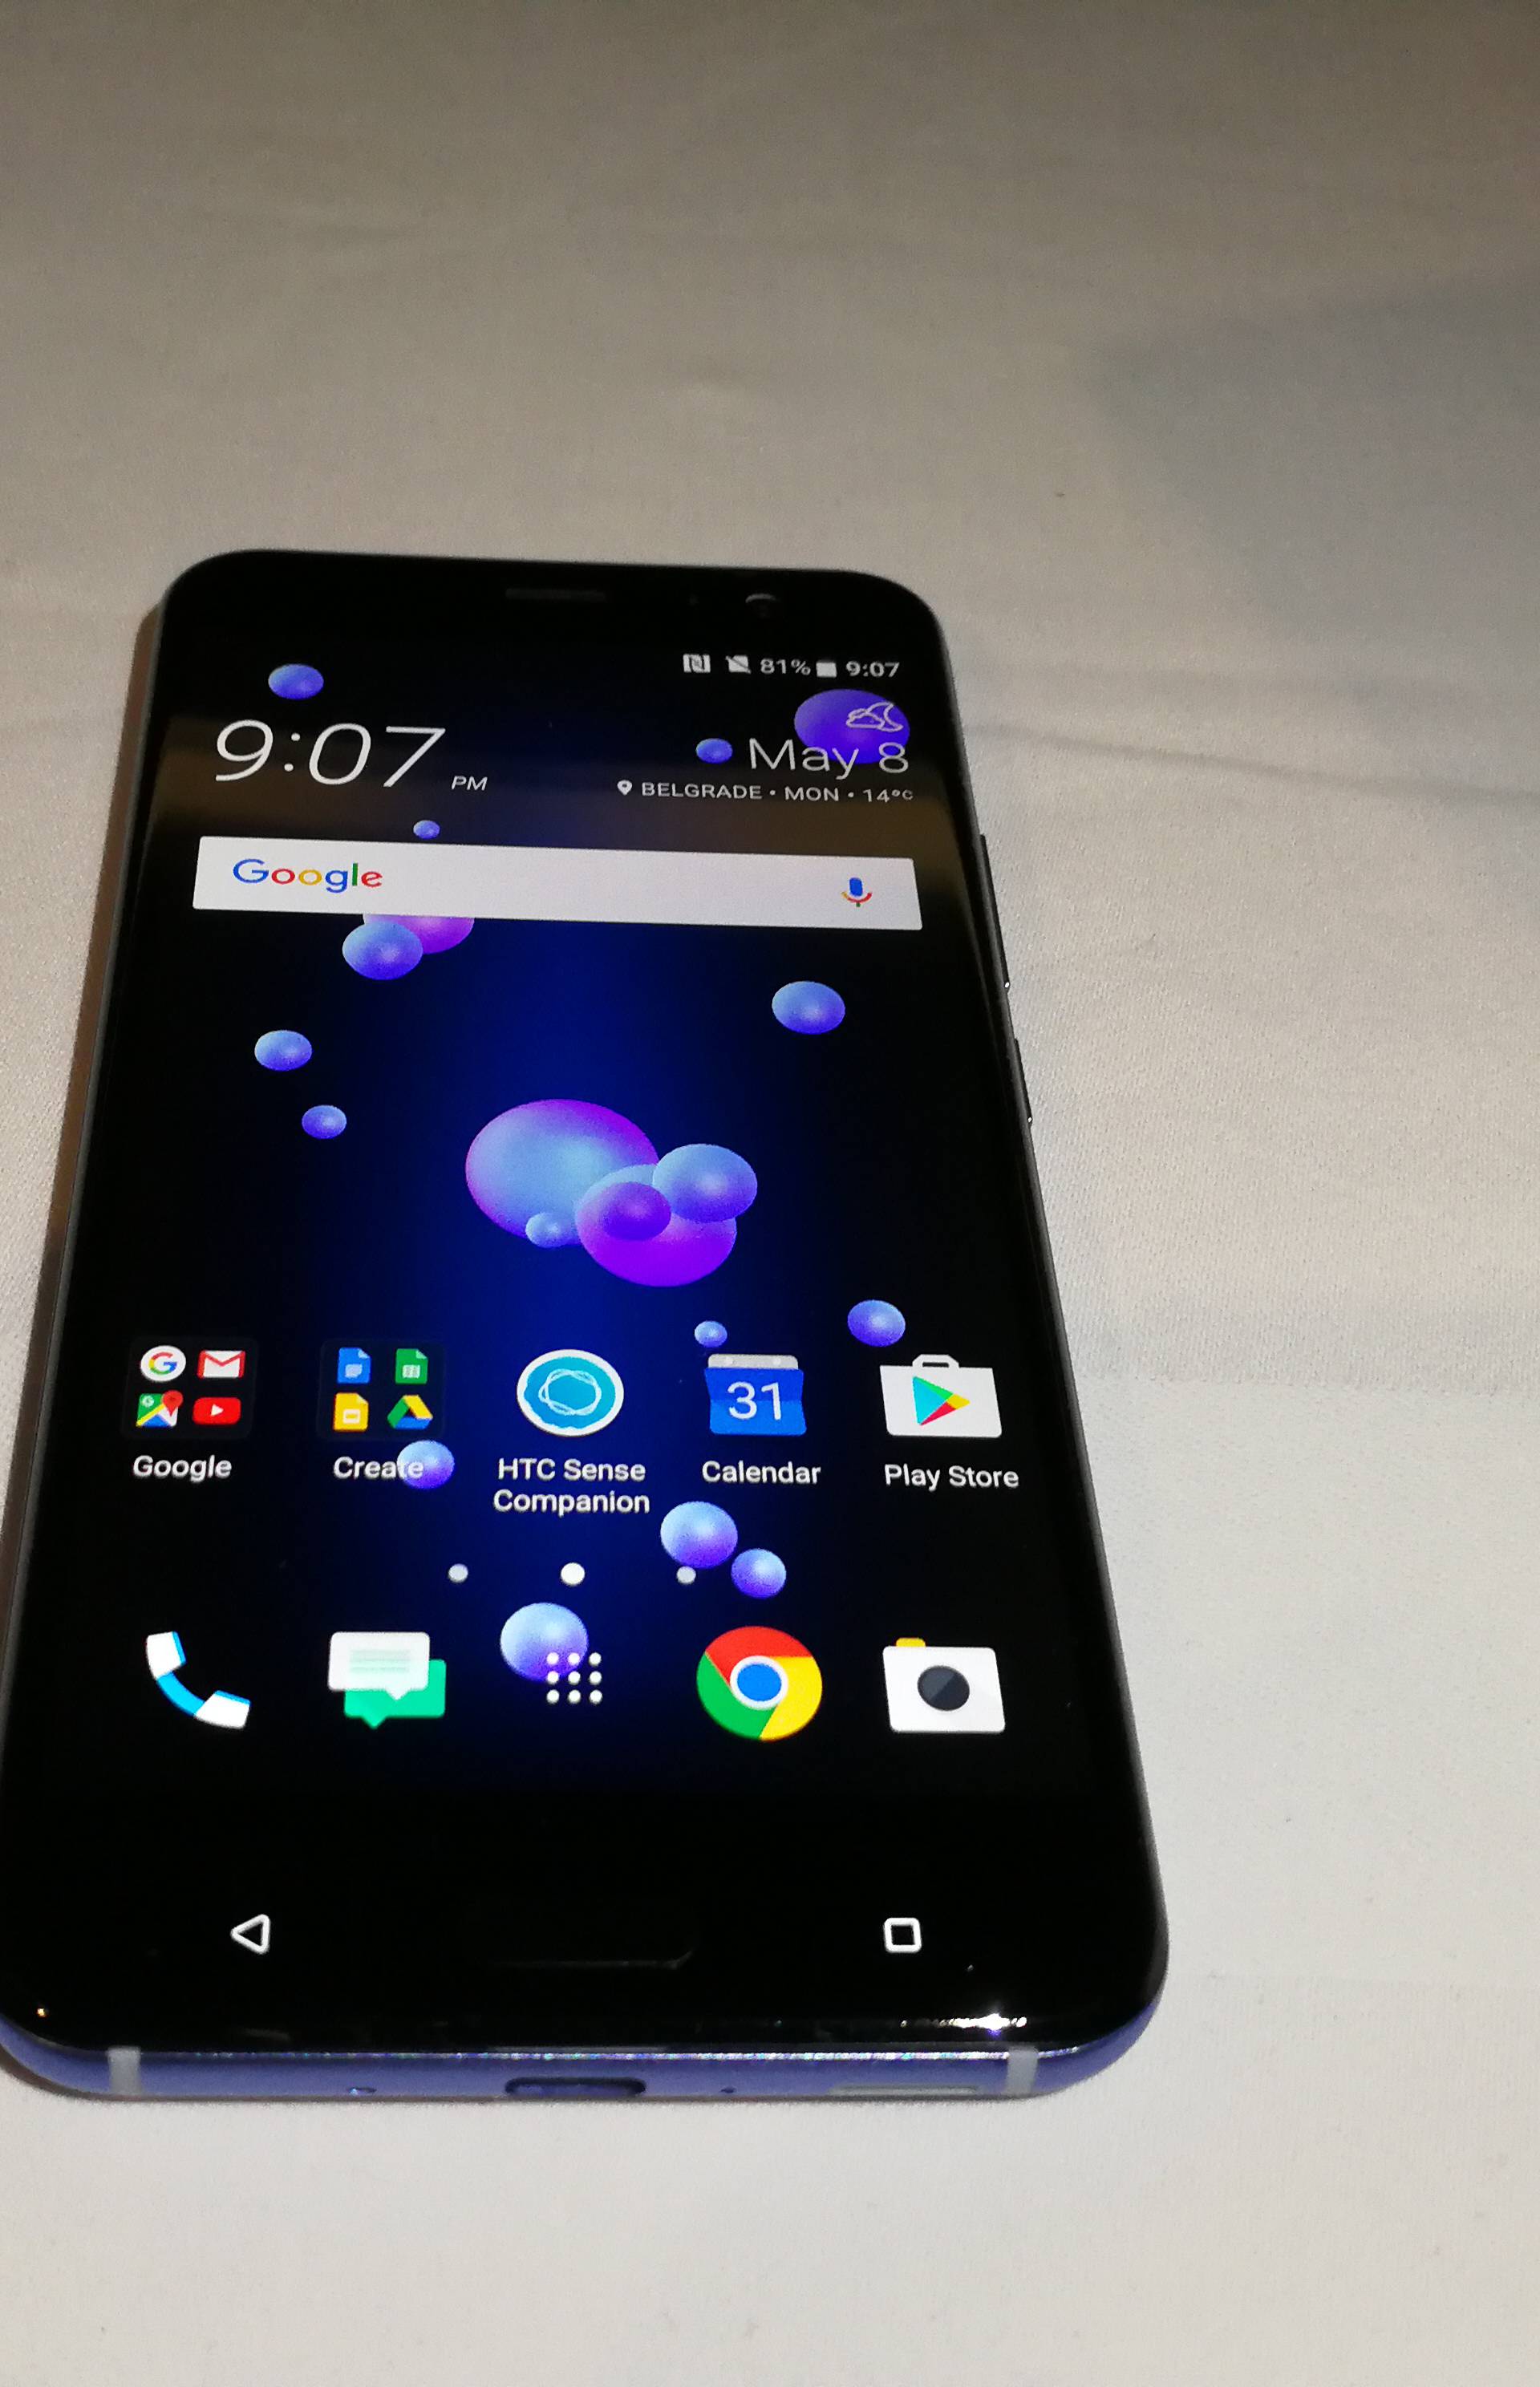 Stisni ga  za selfie: HTC U11 je telefon s najboljom kamerom